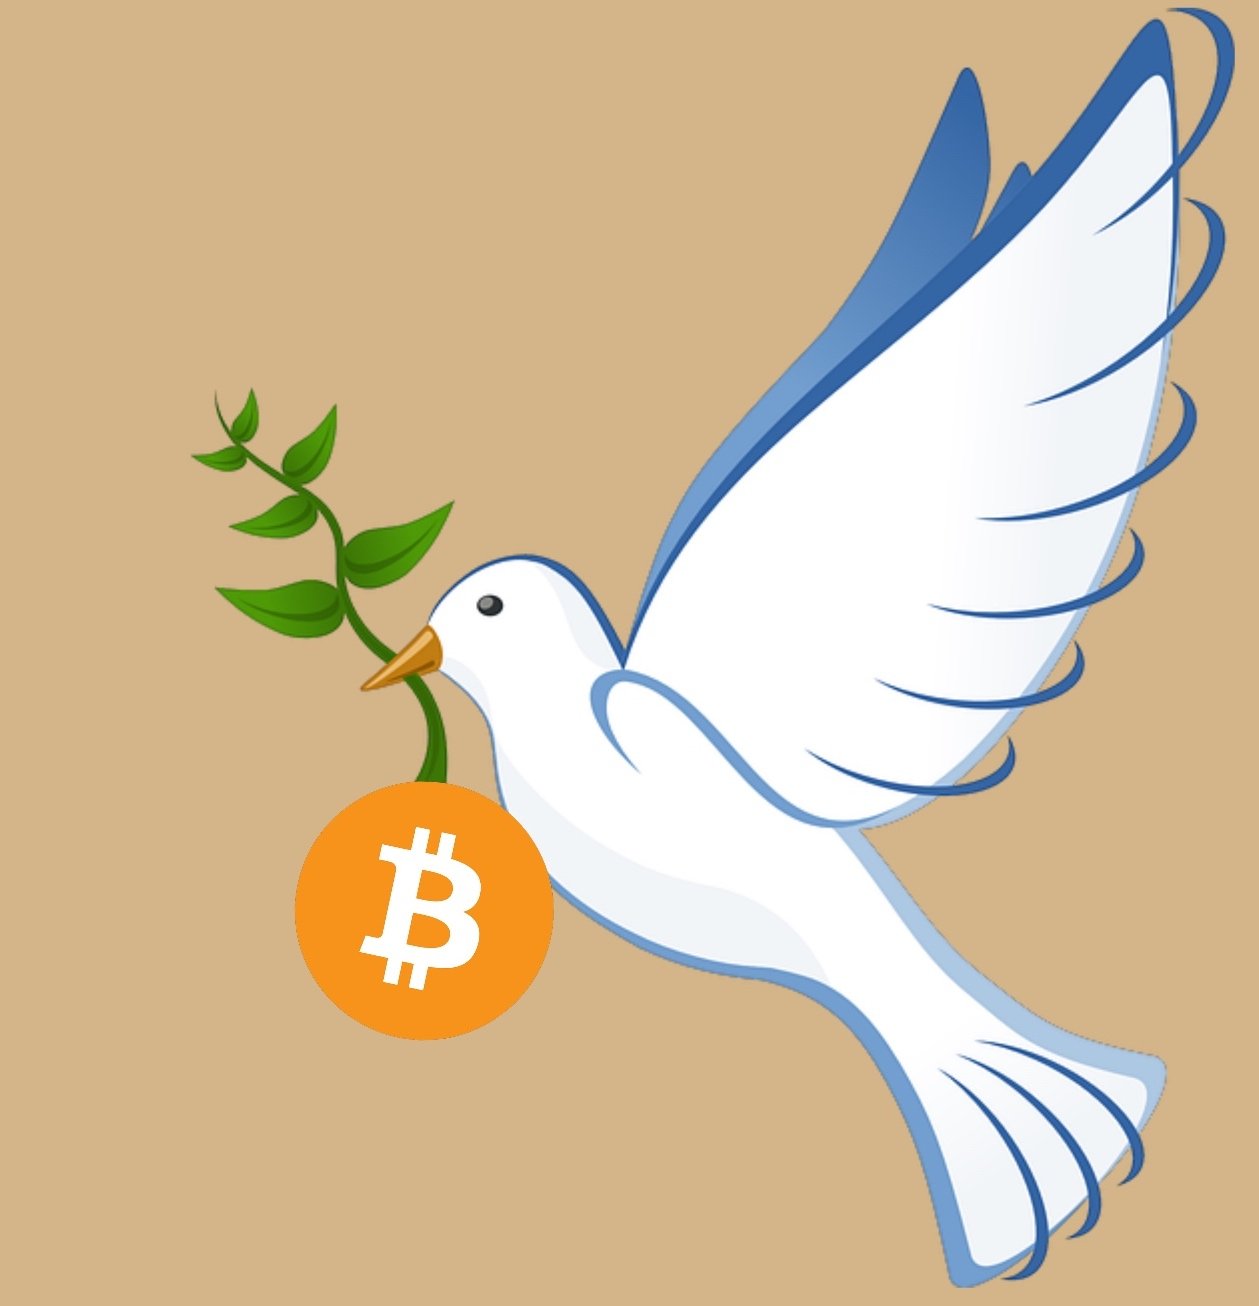 Bitcoinpeace.jpg